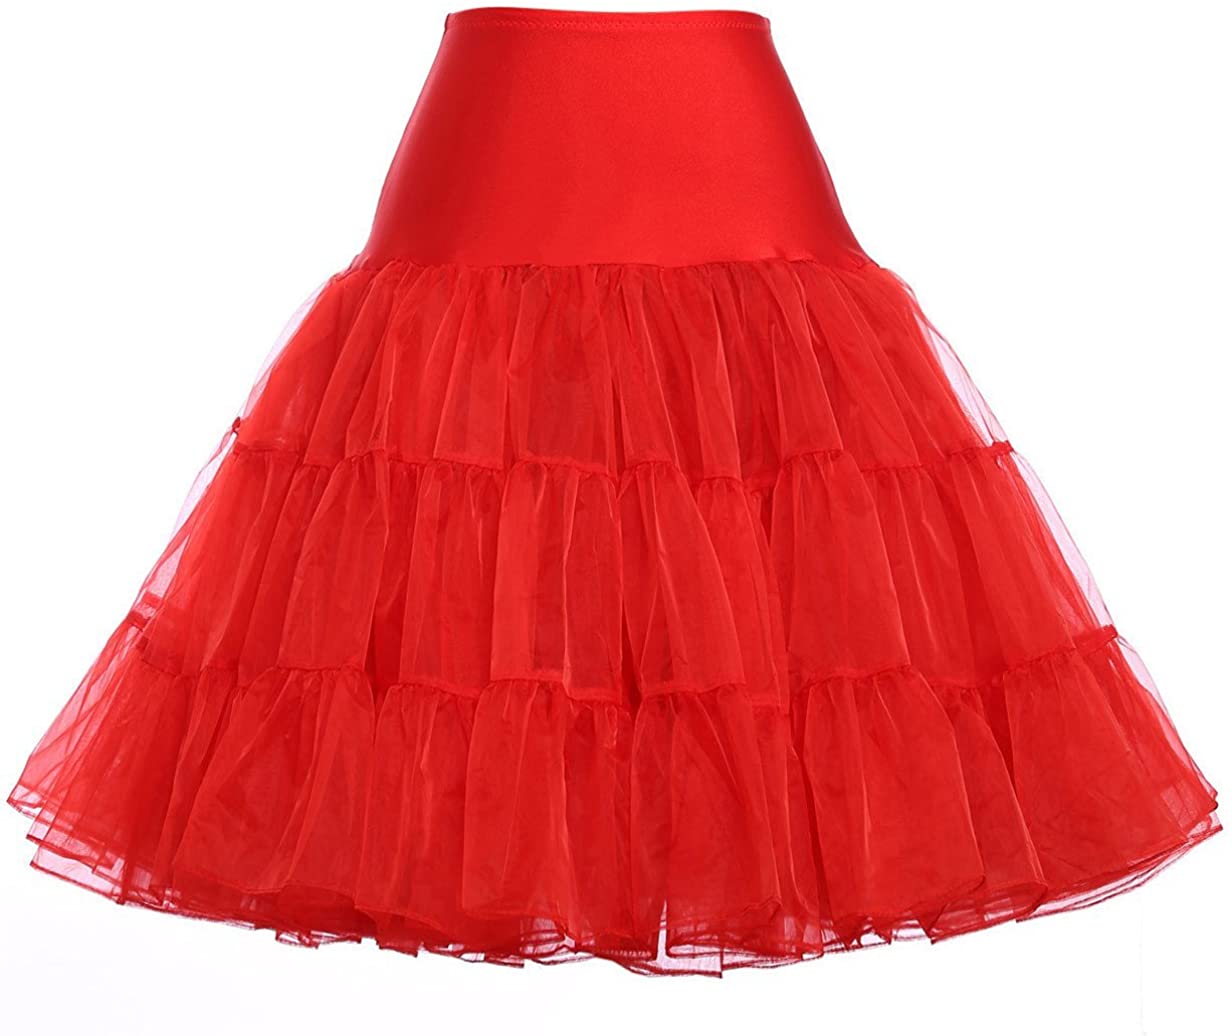 GRACE KARIN Jupon années 50 Vintage en Tulle Rockabilly Petticoat sous Robe Longeur 100cm